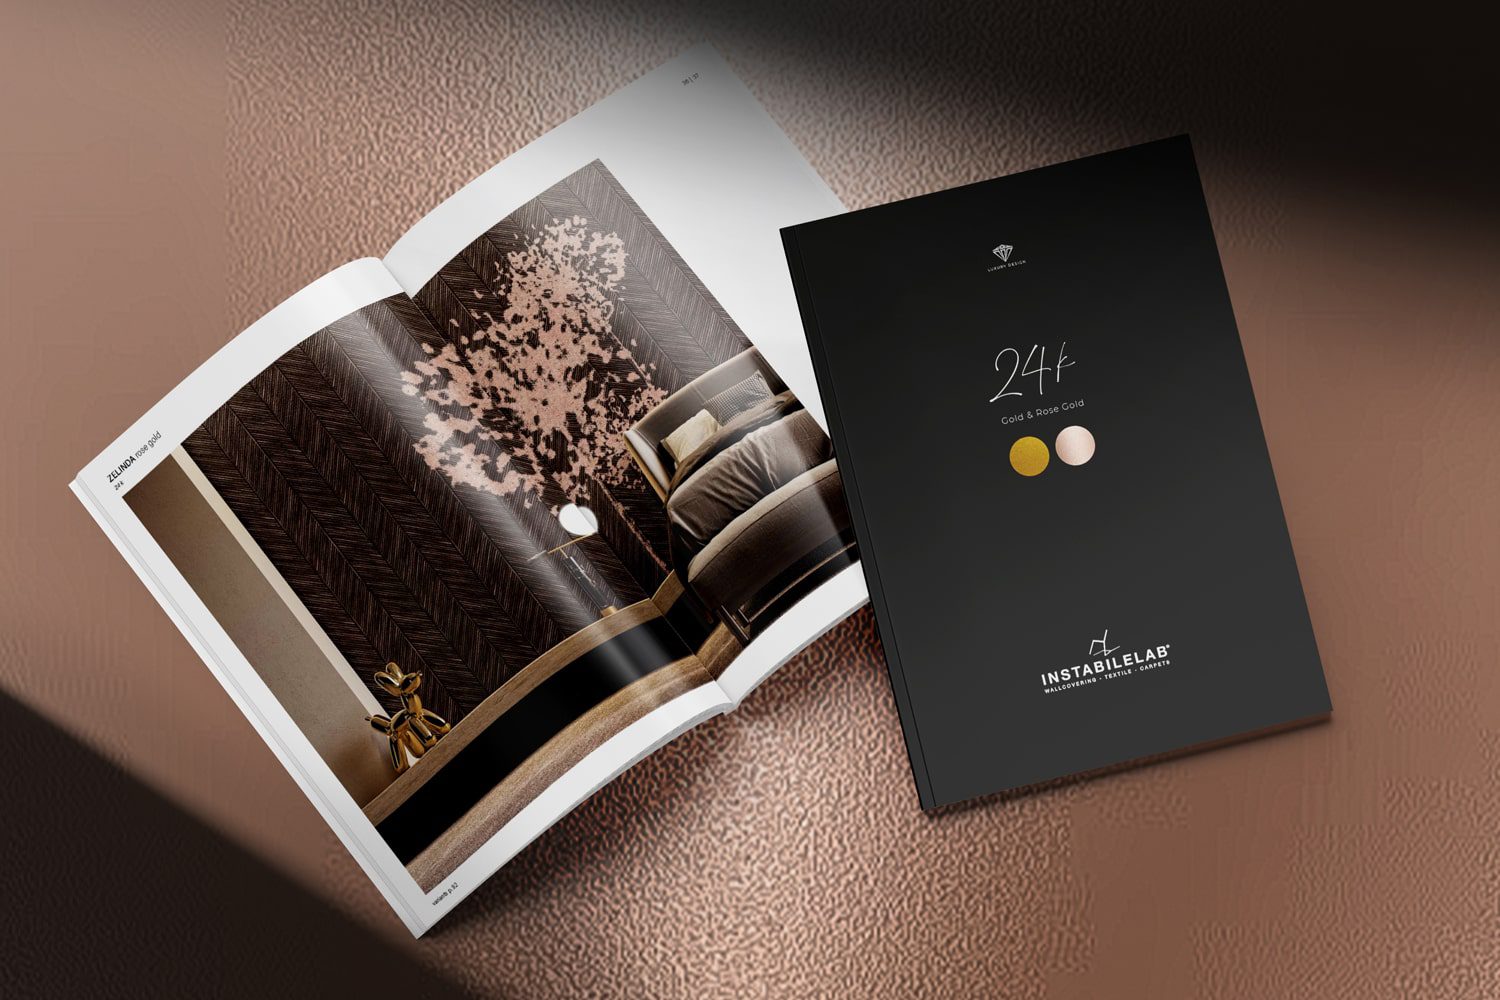 Il fascino esclusivo della carta da parati dorata: la nuova collezione 24K by Instabilelab